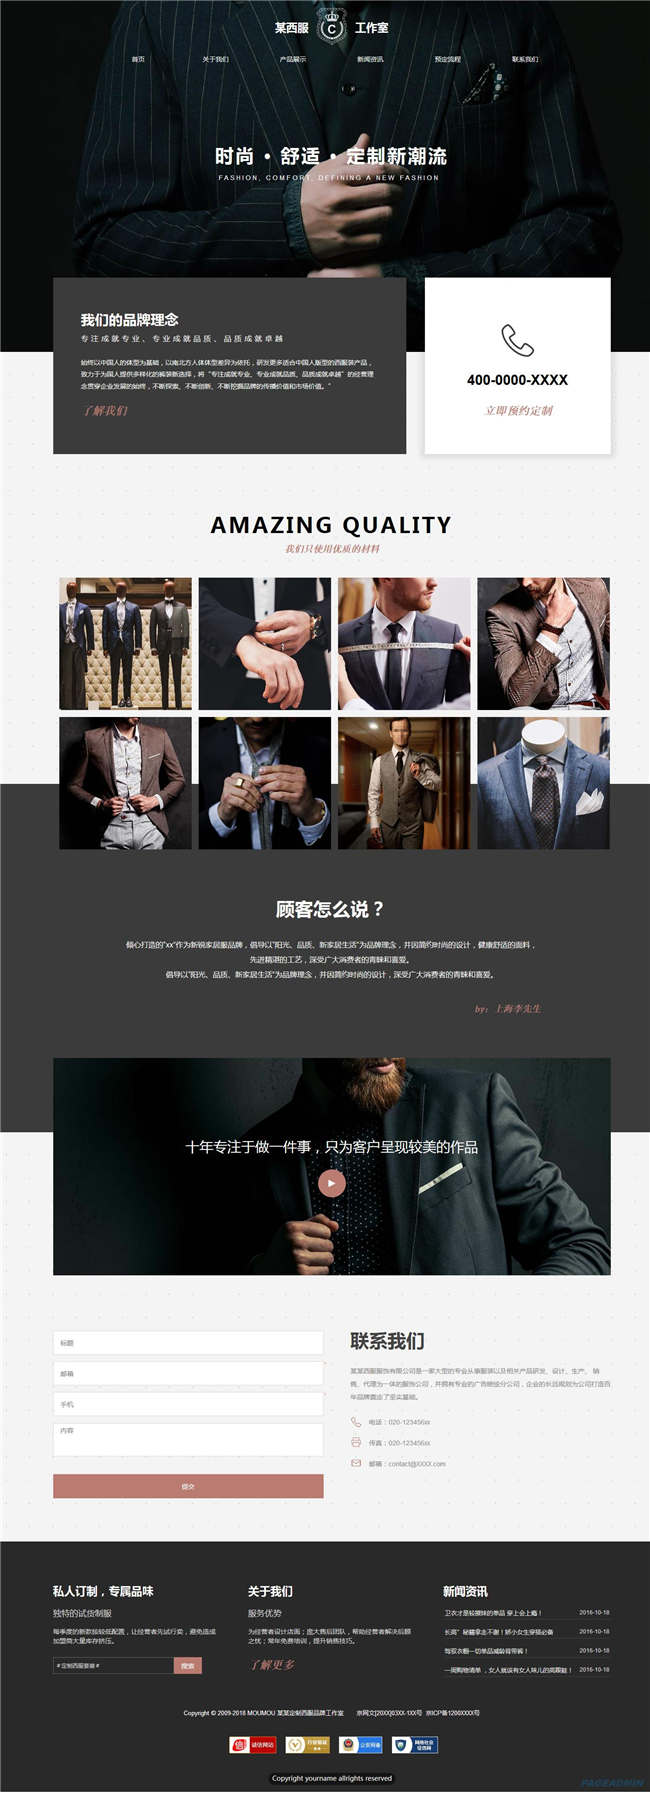 服装企业纺织服饰鞋帽箱包服装网站WP整站模板(含手机版)预览图